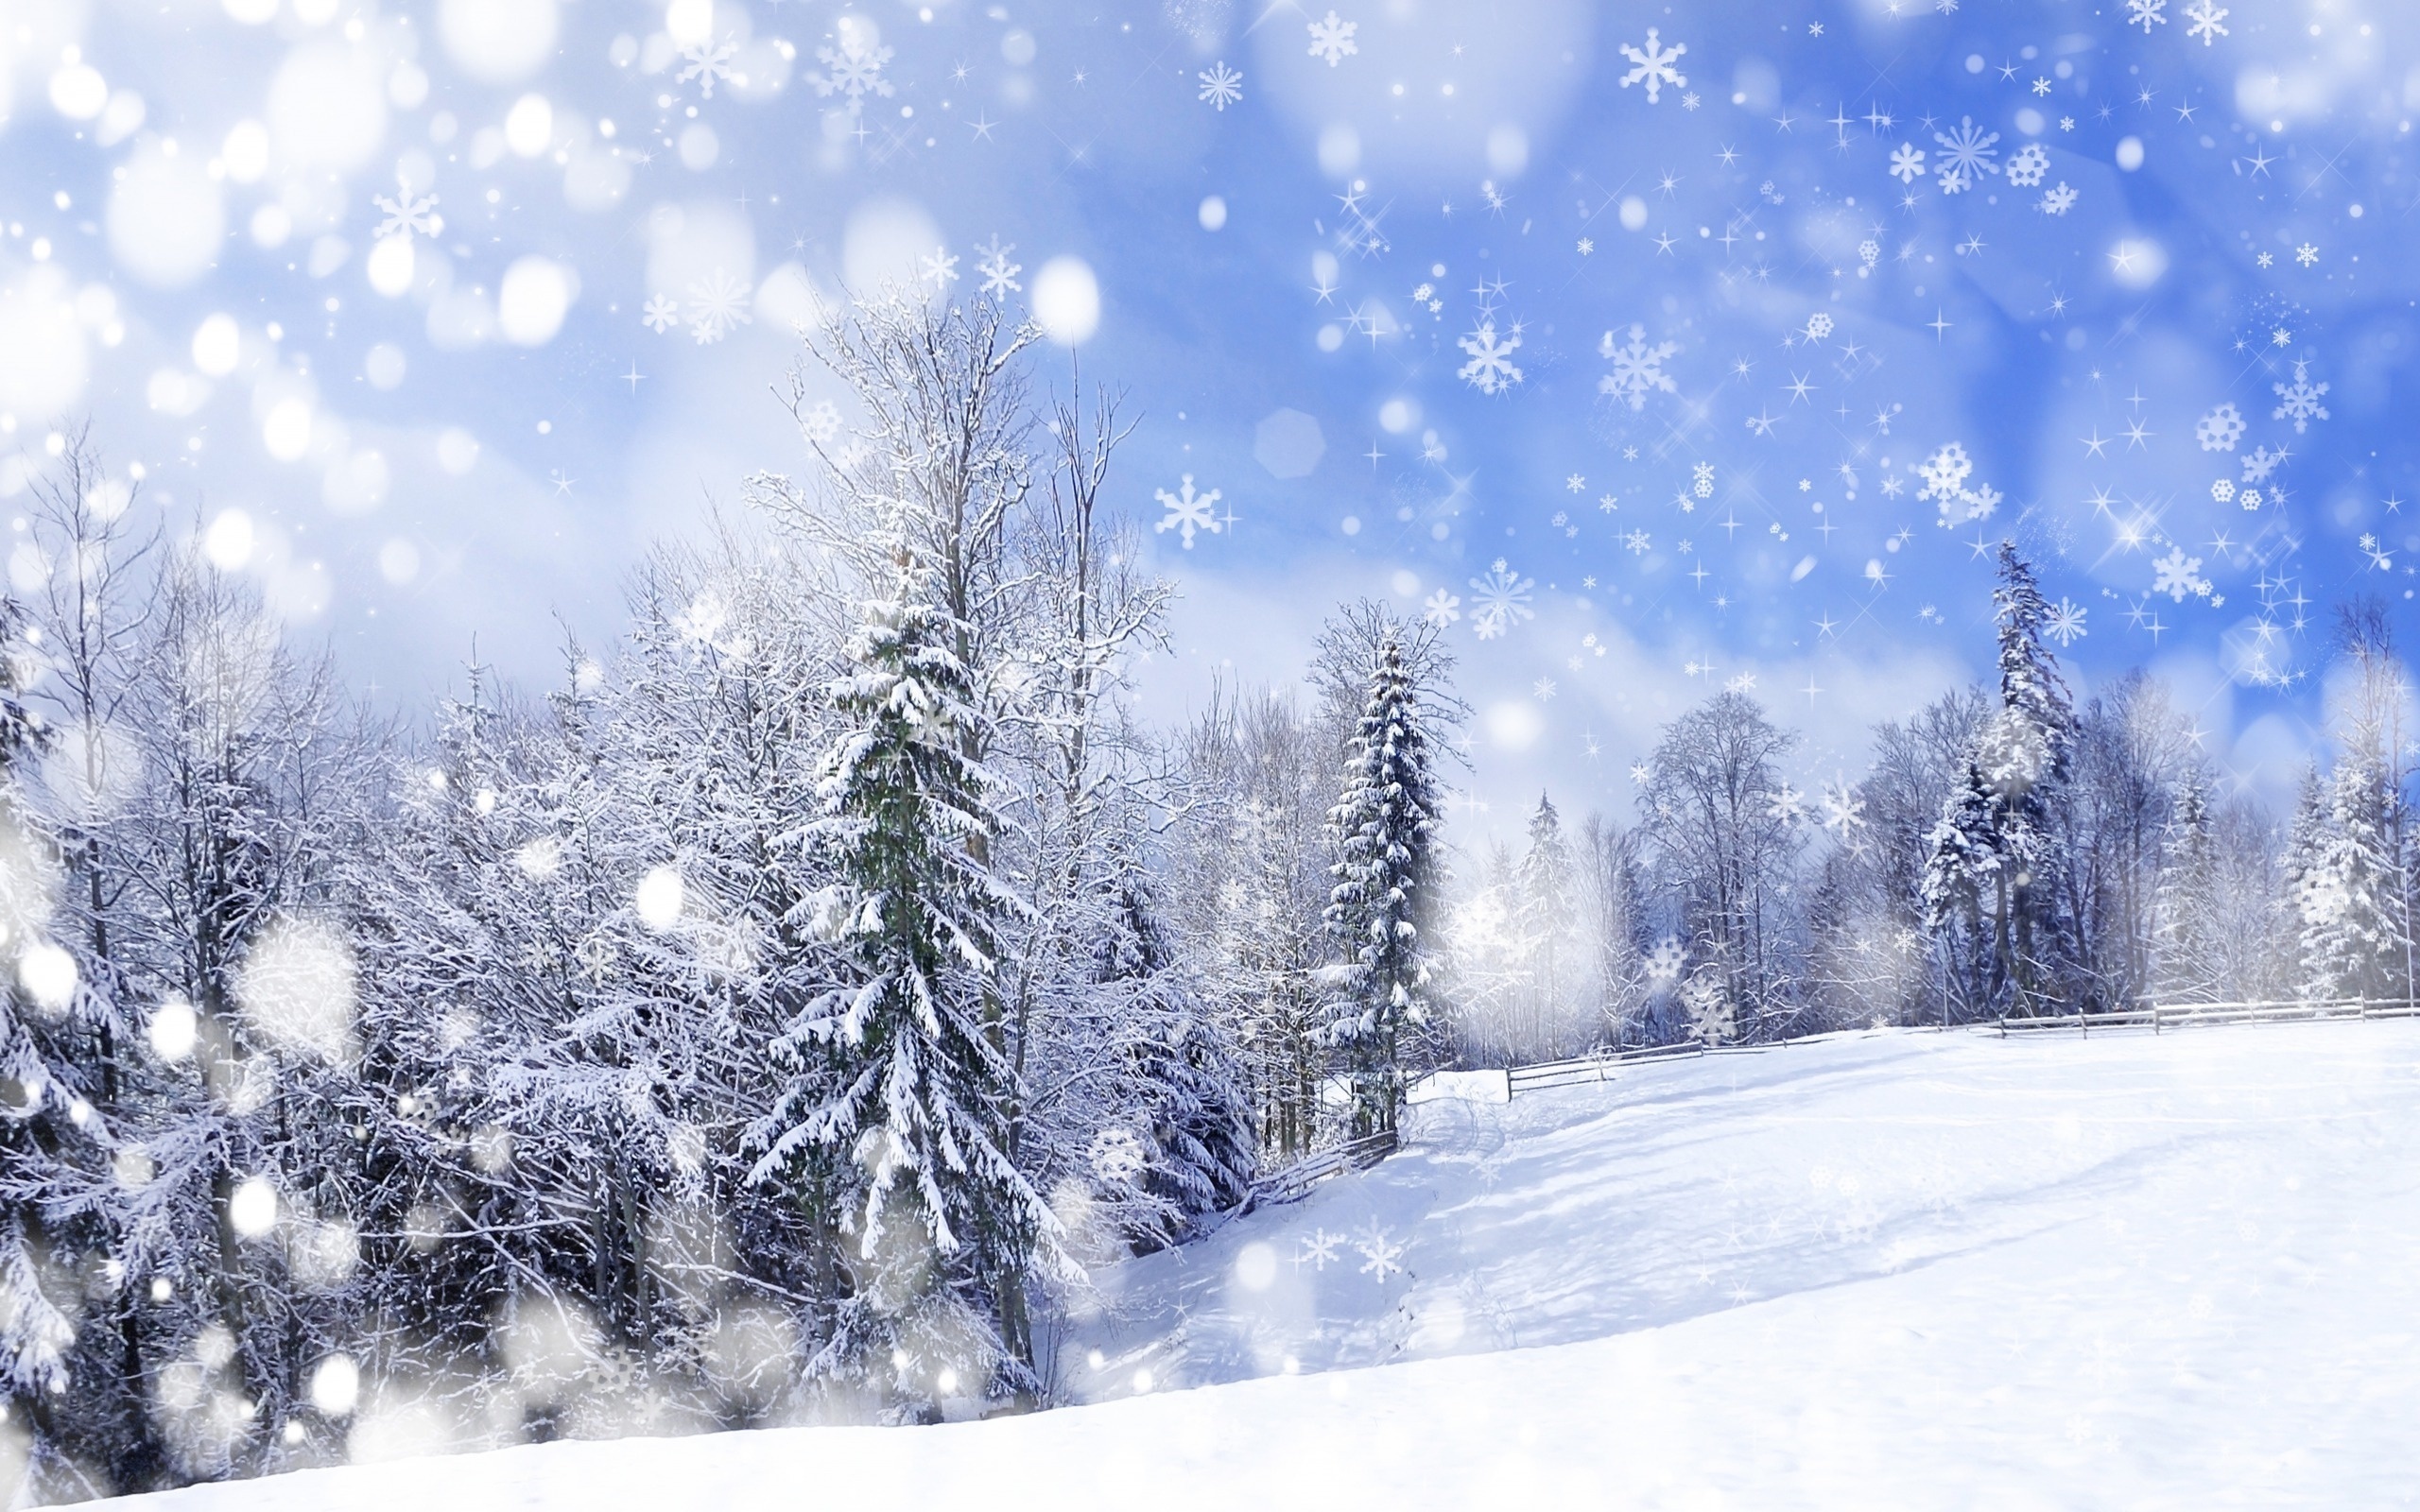 イメージを携帯電話にダウンロード 風景 冬 背景 雪 無料